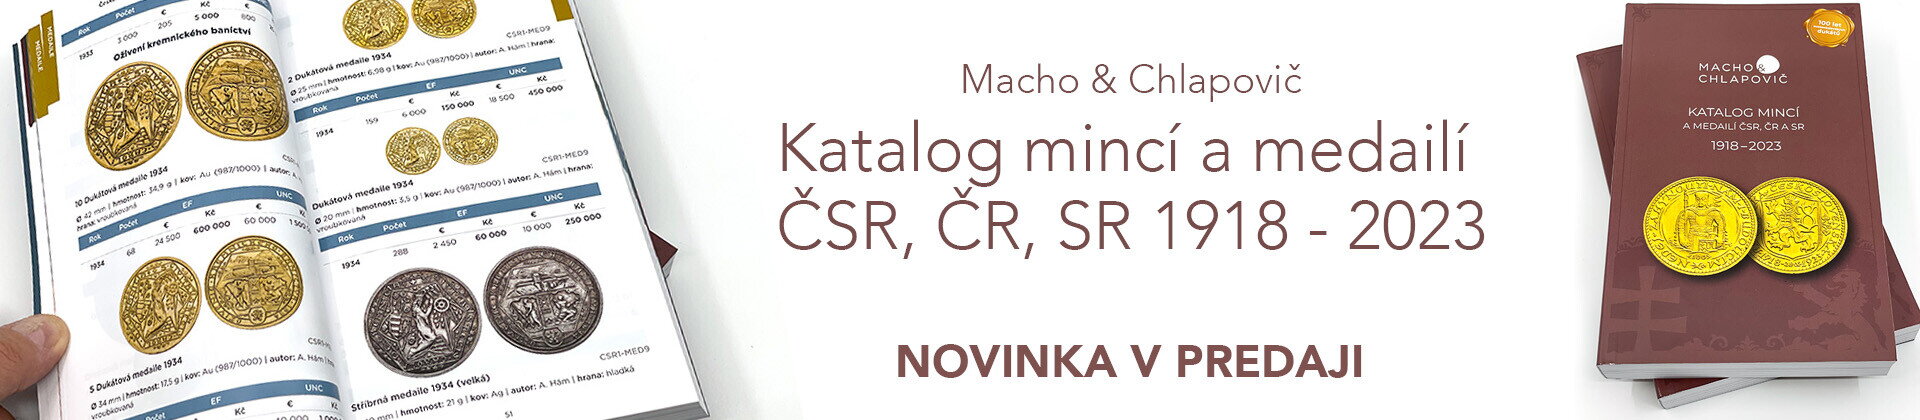 Katalog mincí a medailí Macho Chlapovič - 2022